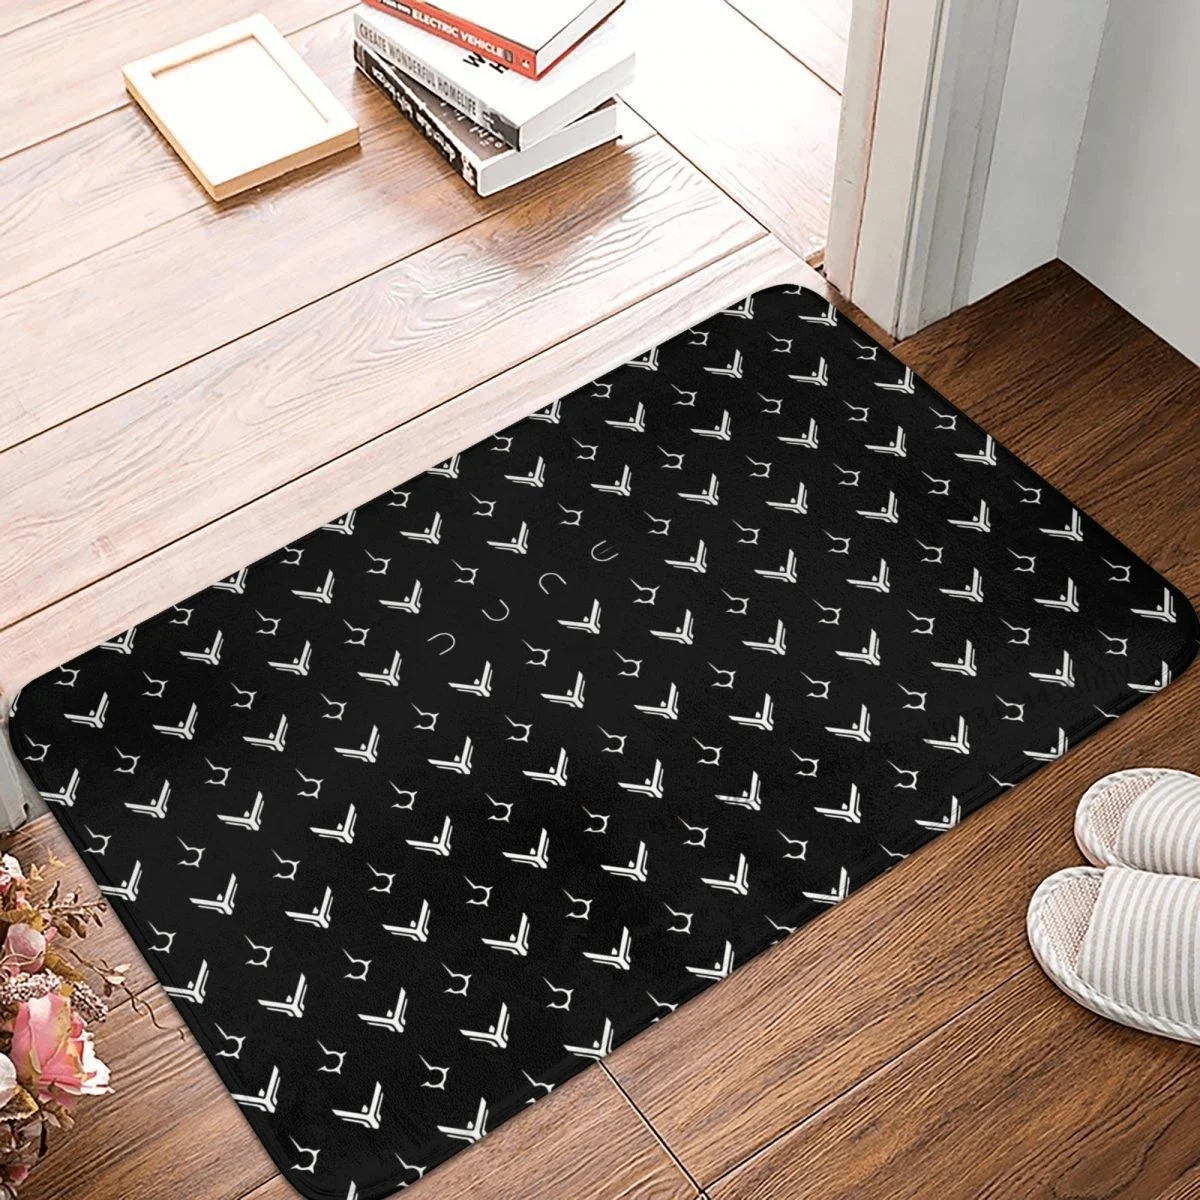 

DUNE SCI FI MOVIE Doormat Kitchen Mat Atreides And Harkonnen Symbol Pattern Floor Carpet Entrance Door Rug Indoor Decor